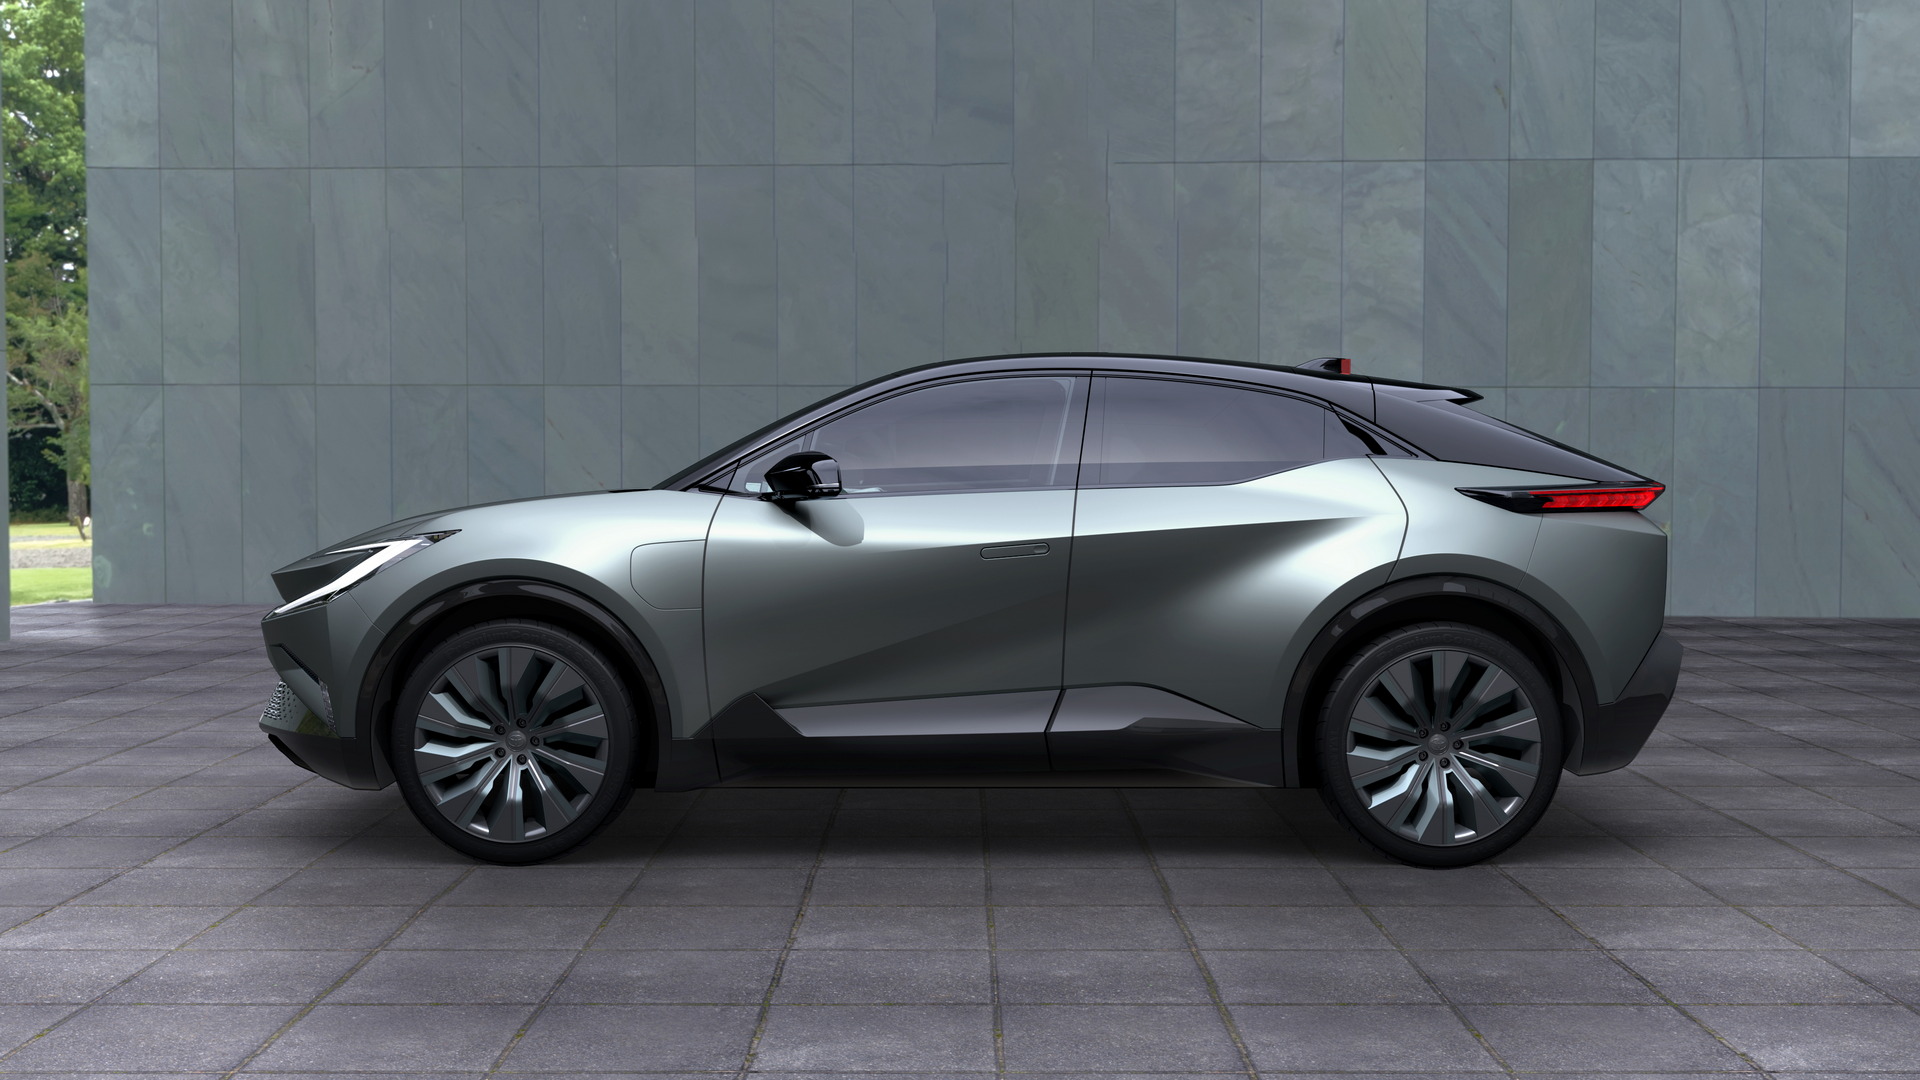 Toyota nhá hàng SUV điện mới toanh: Màn hình gấp, nhiều điểm thiết kế lạ mắt - Ảnh 4.